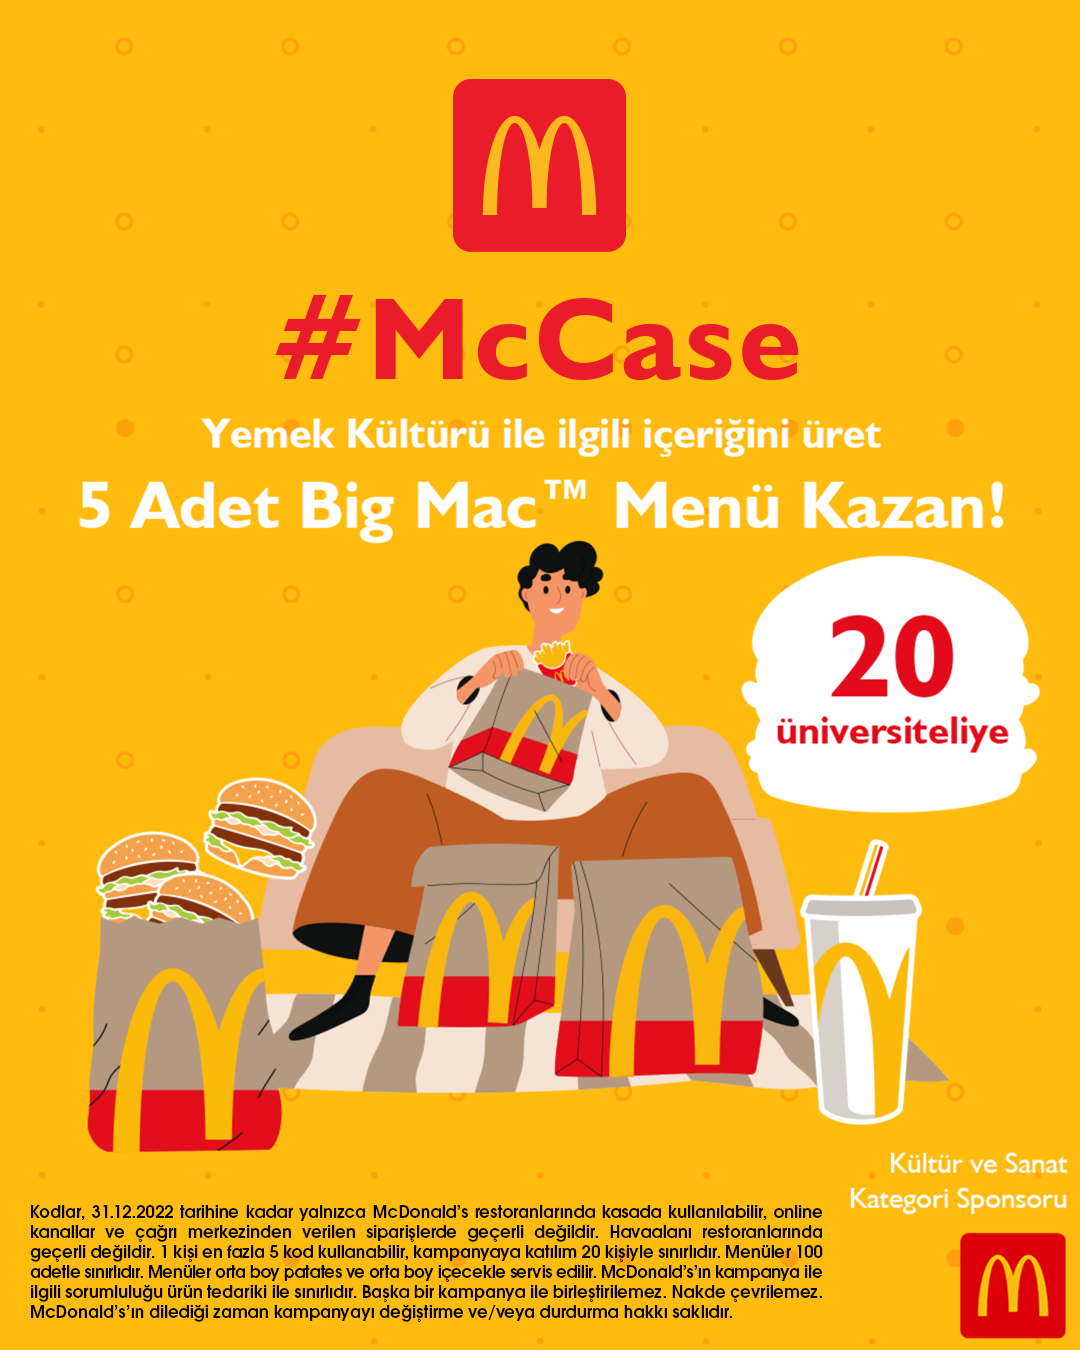 5 Adet Big Mac Menü Ödüllü McCase Başlıyor!